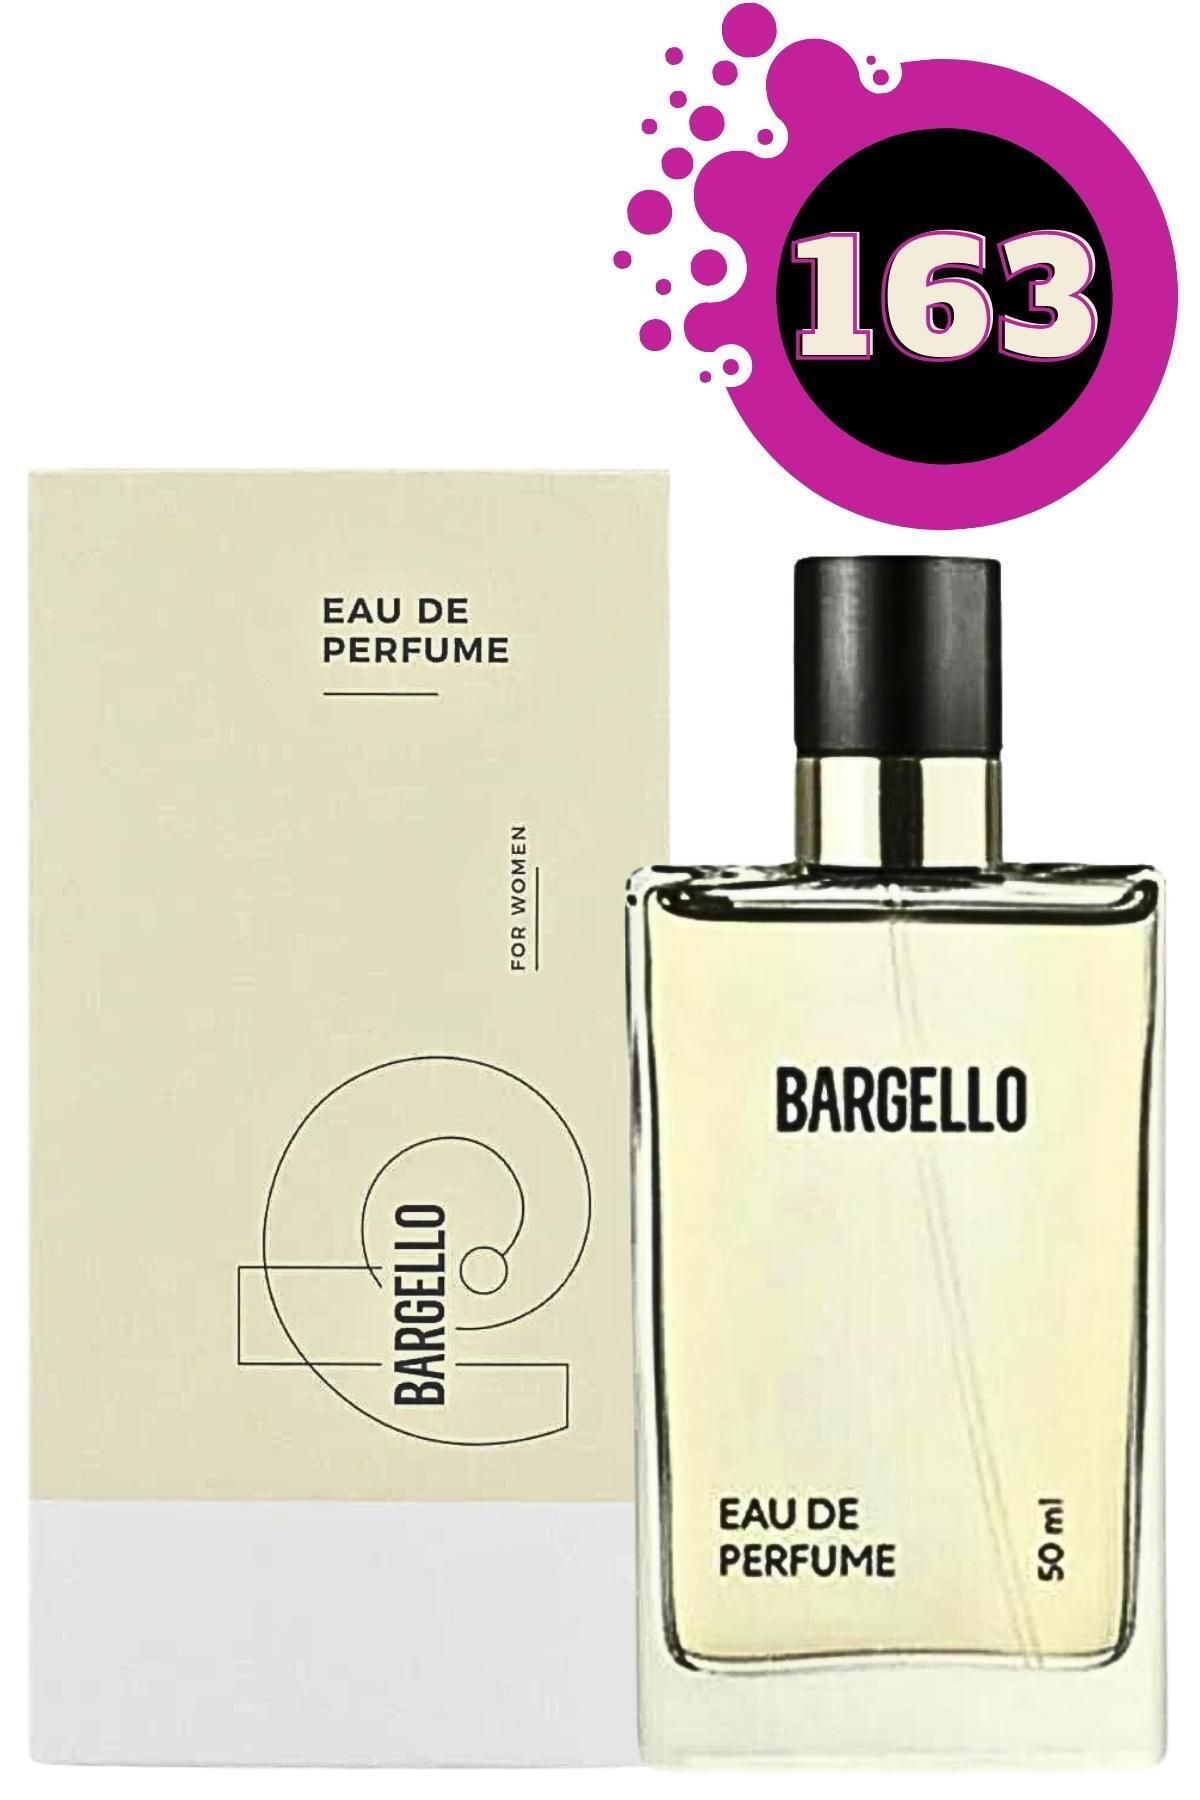 Bargello Kadın Parfüm 163 Edp Floral 50 Ml 2164911040163